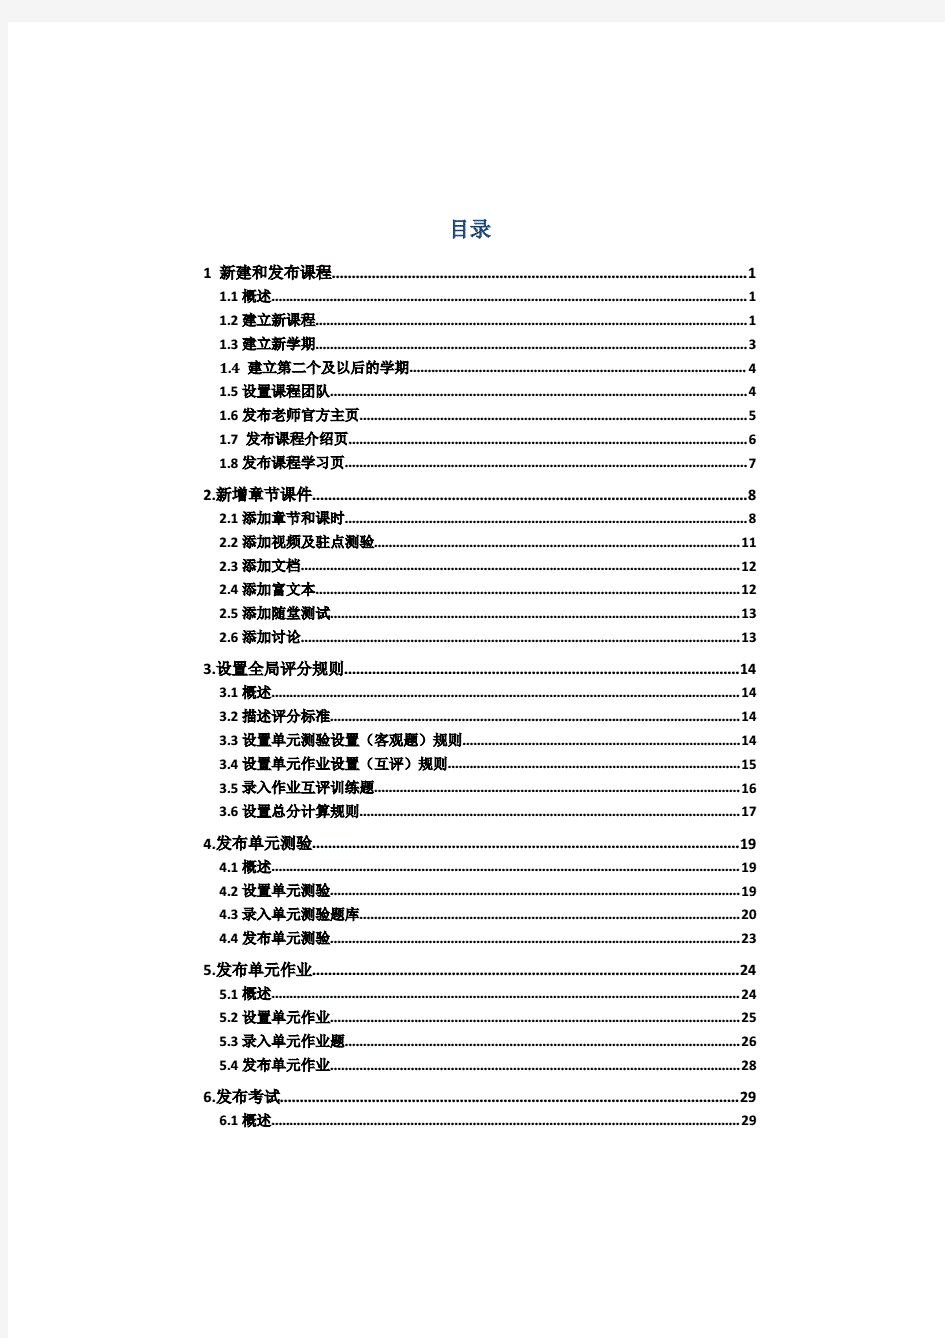 中国大学MOOC老师使用指导手册--完整版